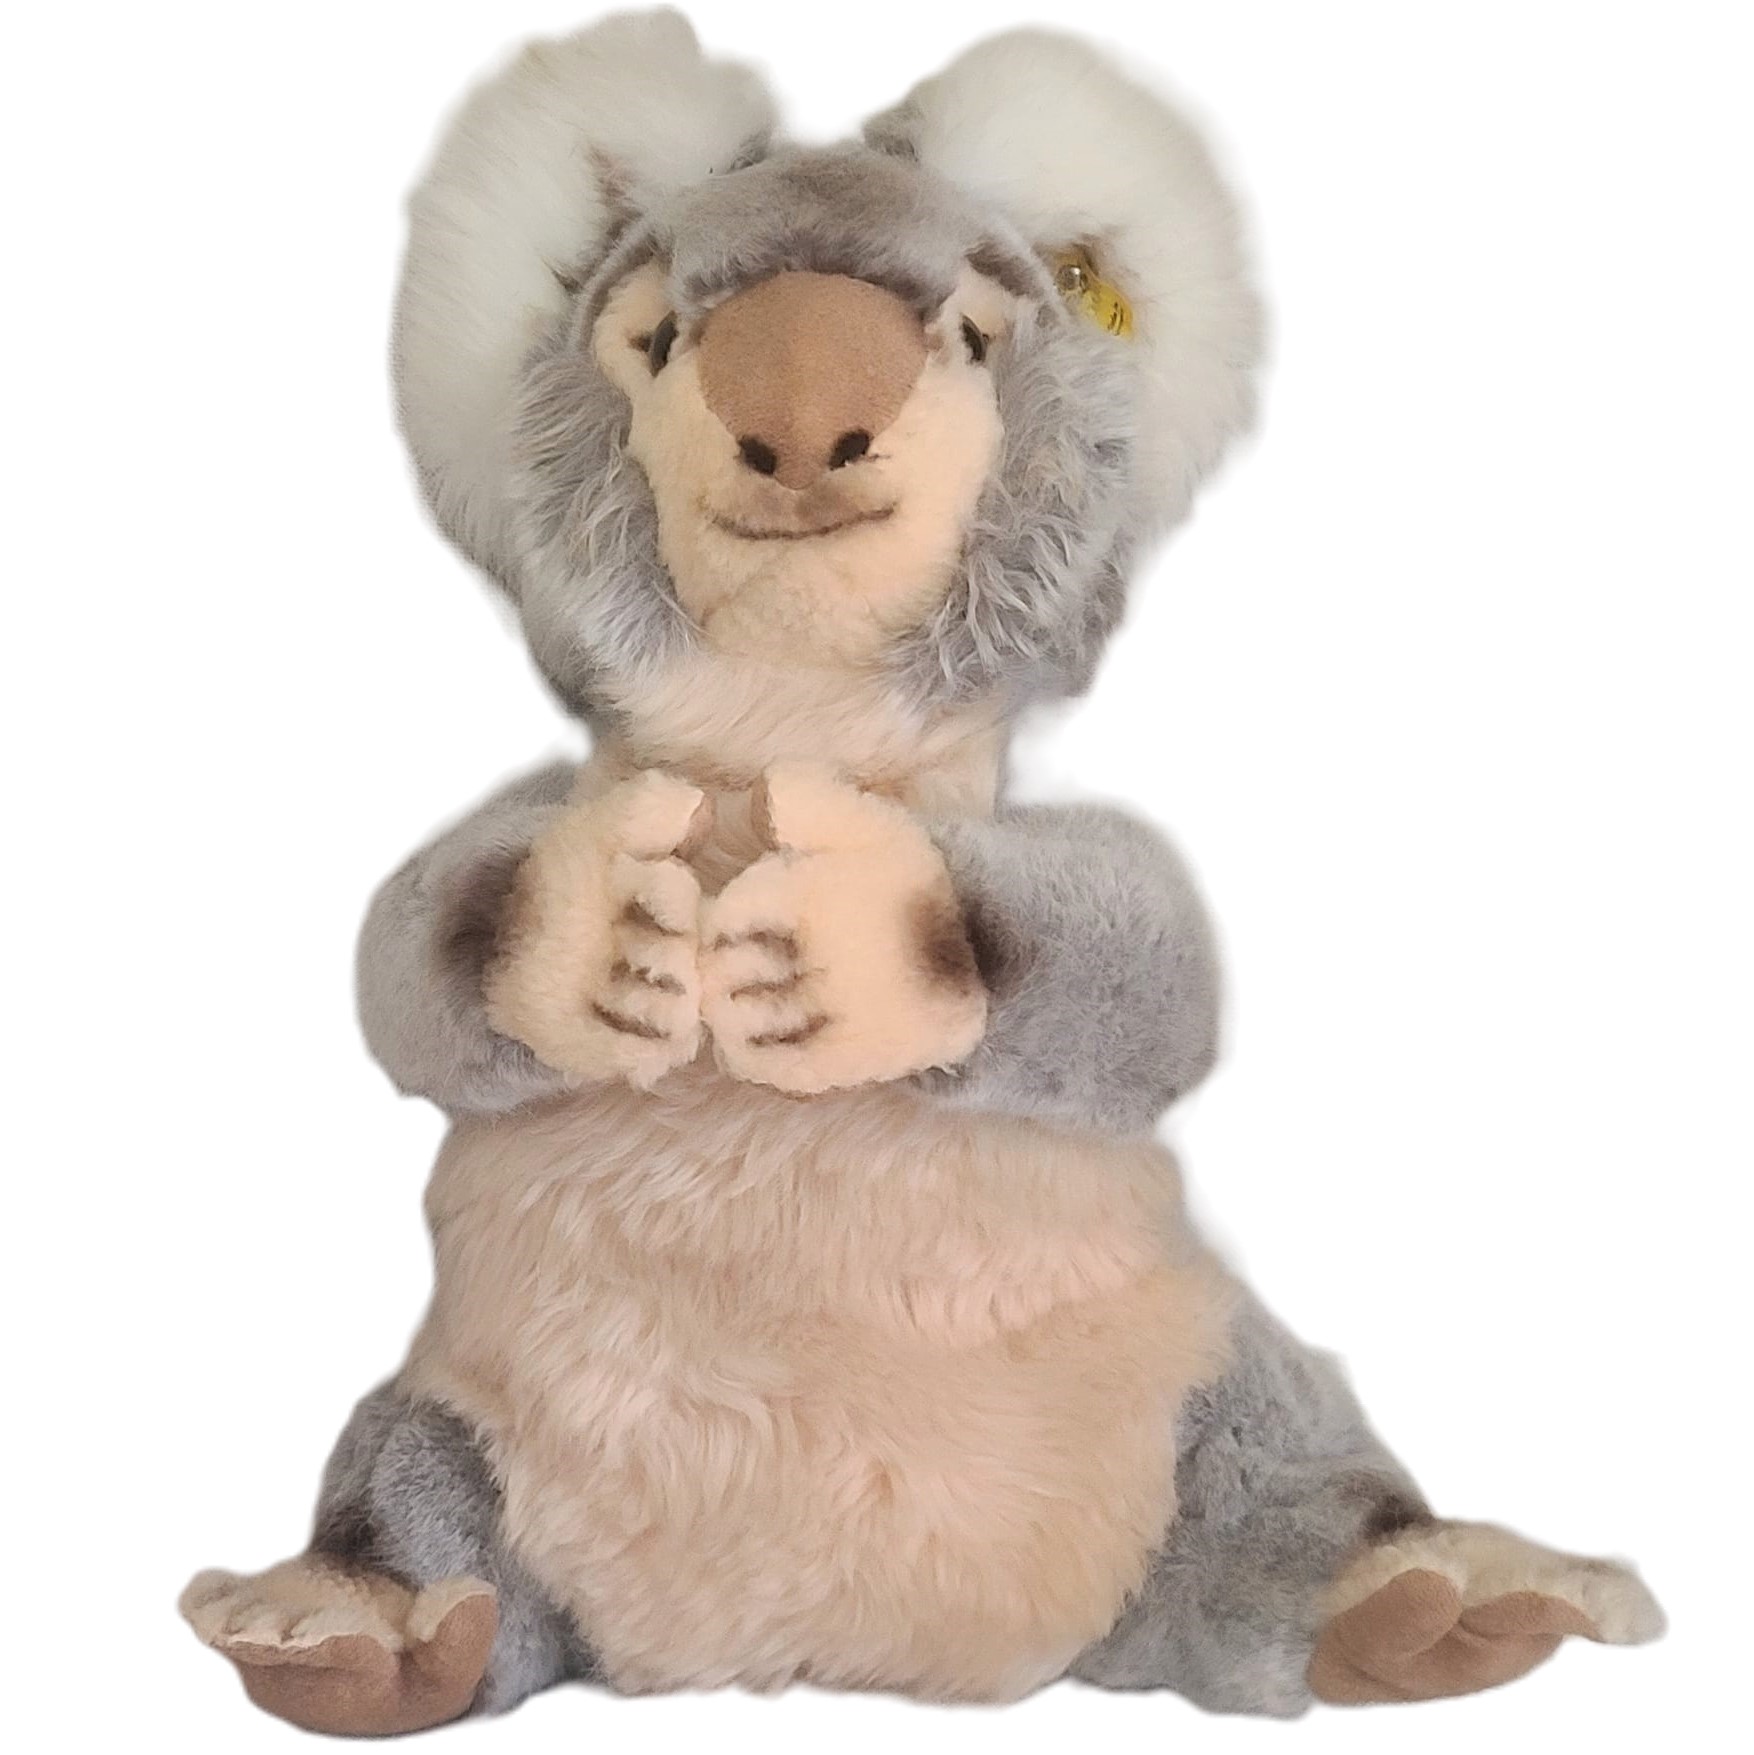 STEIFF Koala Bear, Molly 0331/40 Made in Germany - Click Image to Close